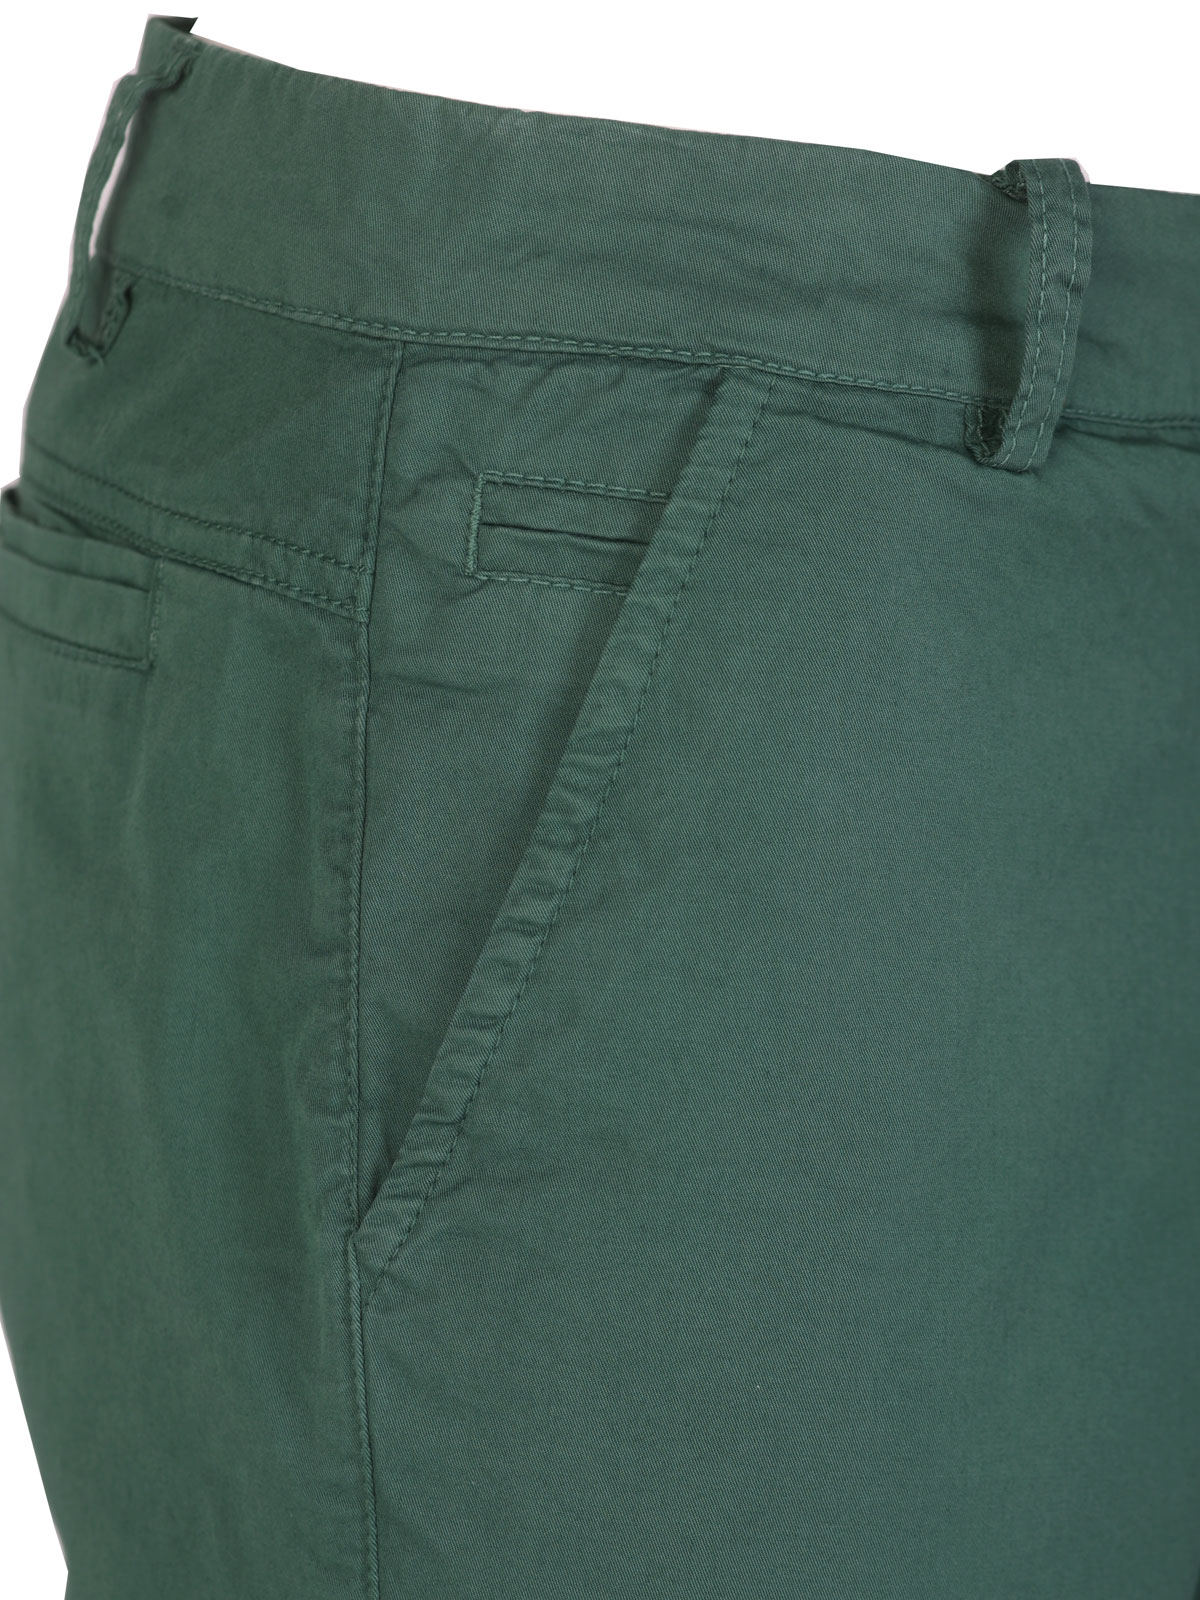 Κοντό παντελόνι σε πράσινο χρώμα - 67093 € 43.87 img2